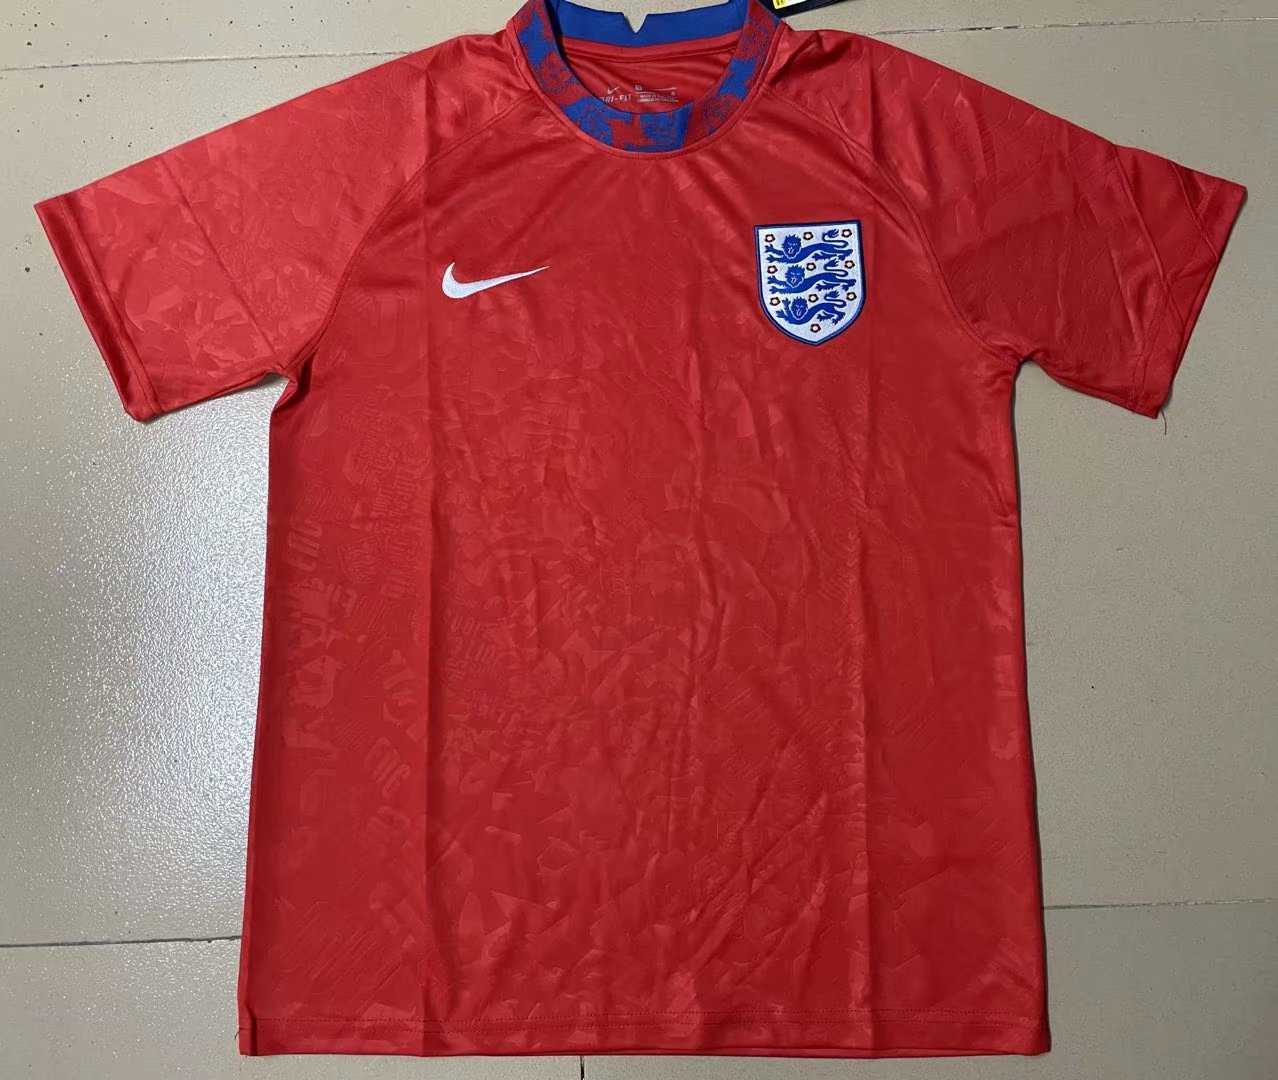 2021/22 England Red Short Soccer Training Jersey Mens